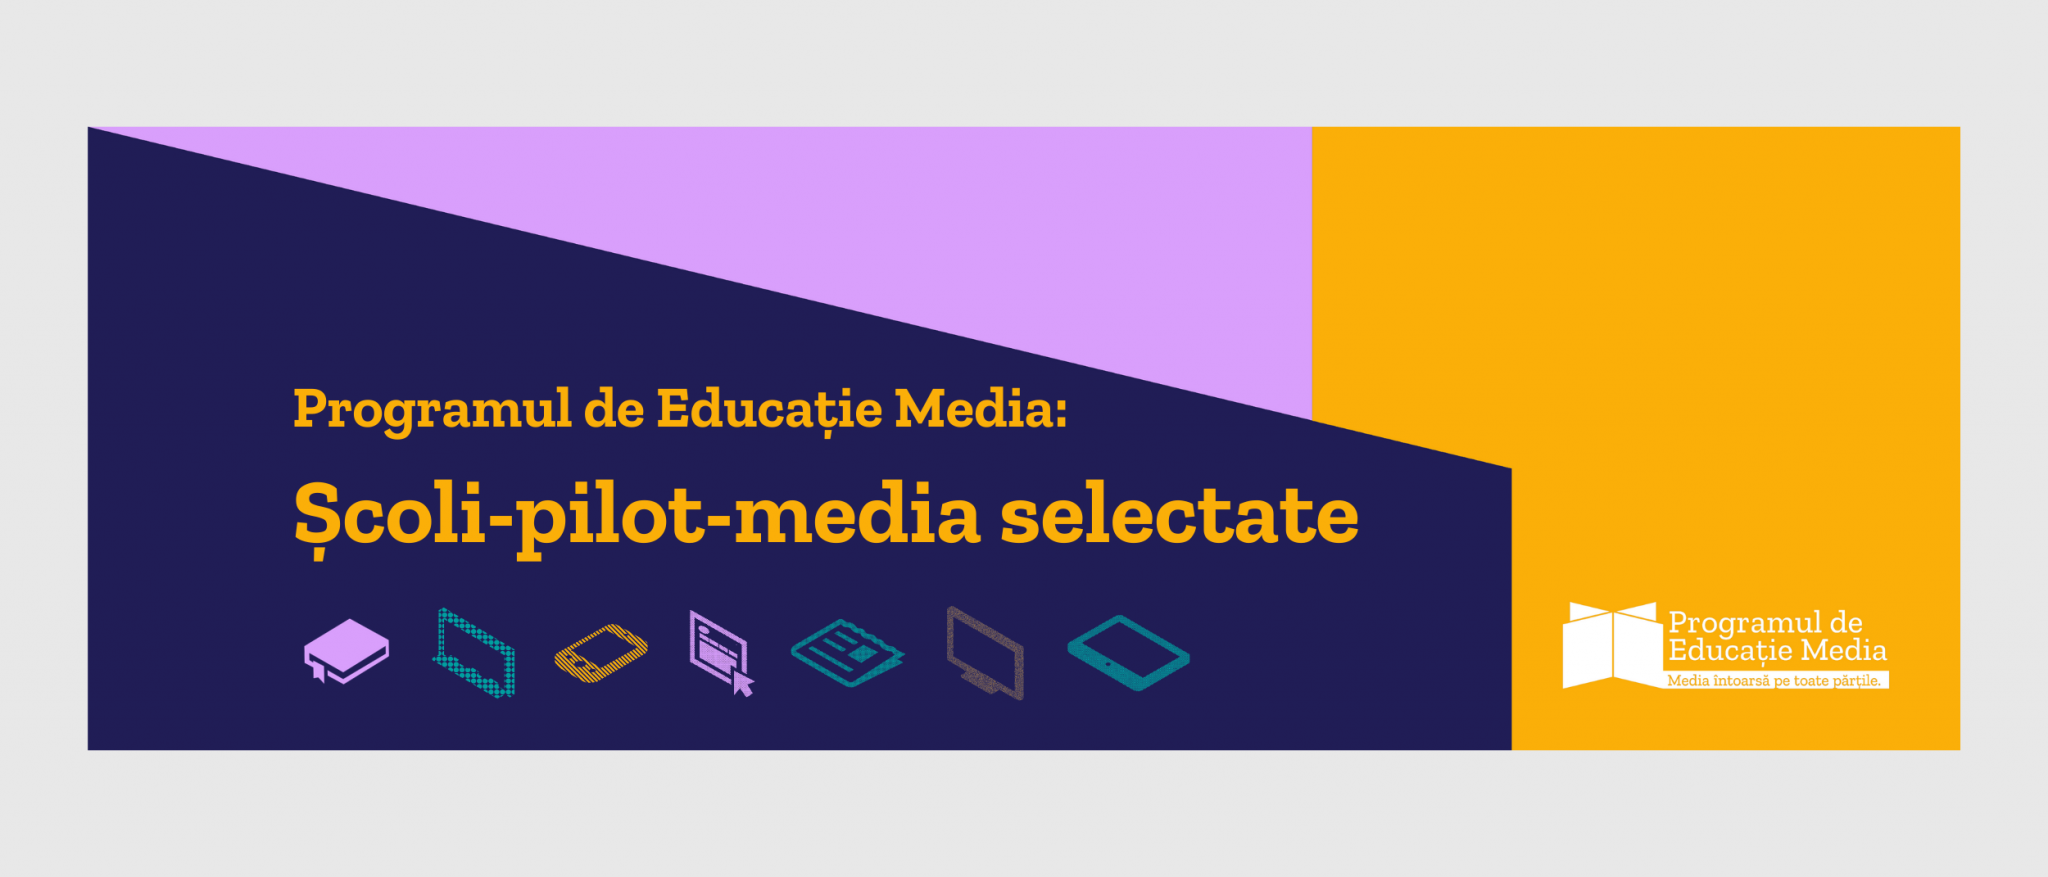 Programul de Educatie Media_CJI_selectie scoli-pilot-media